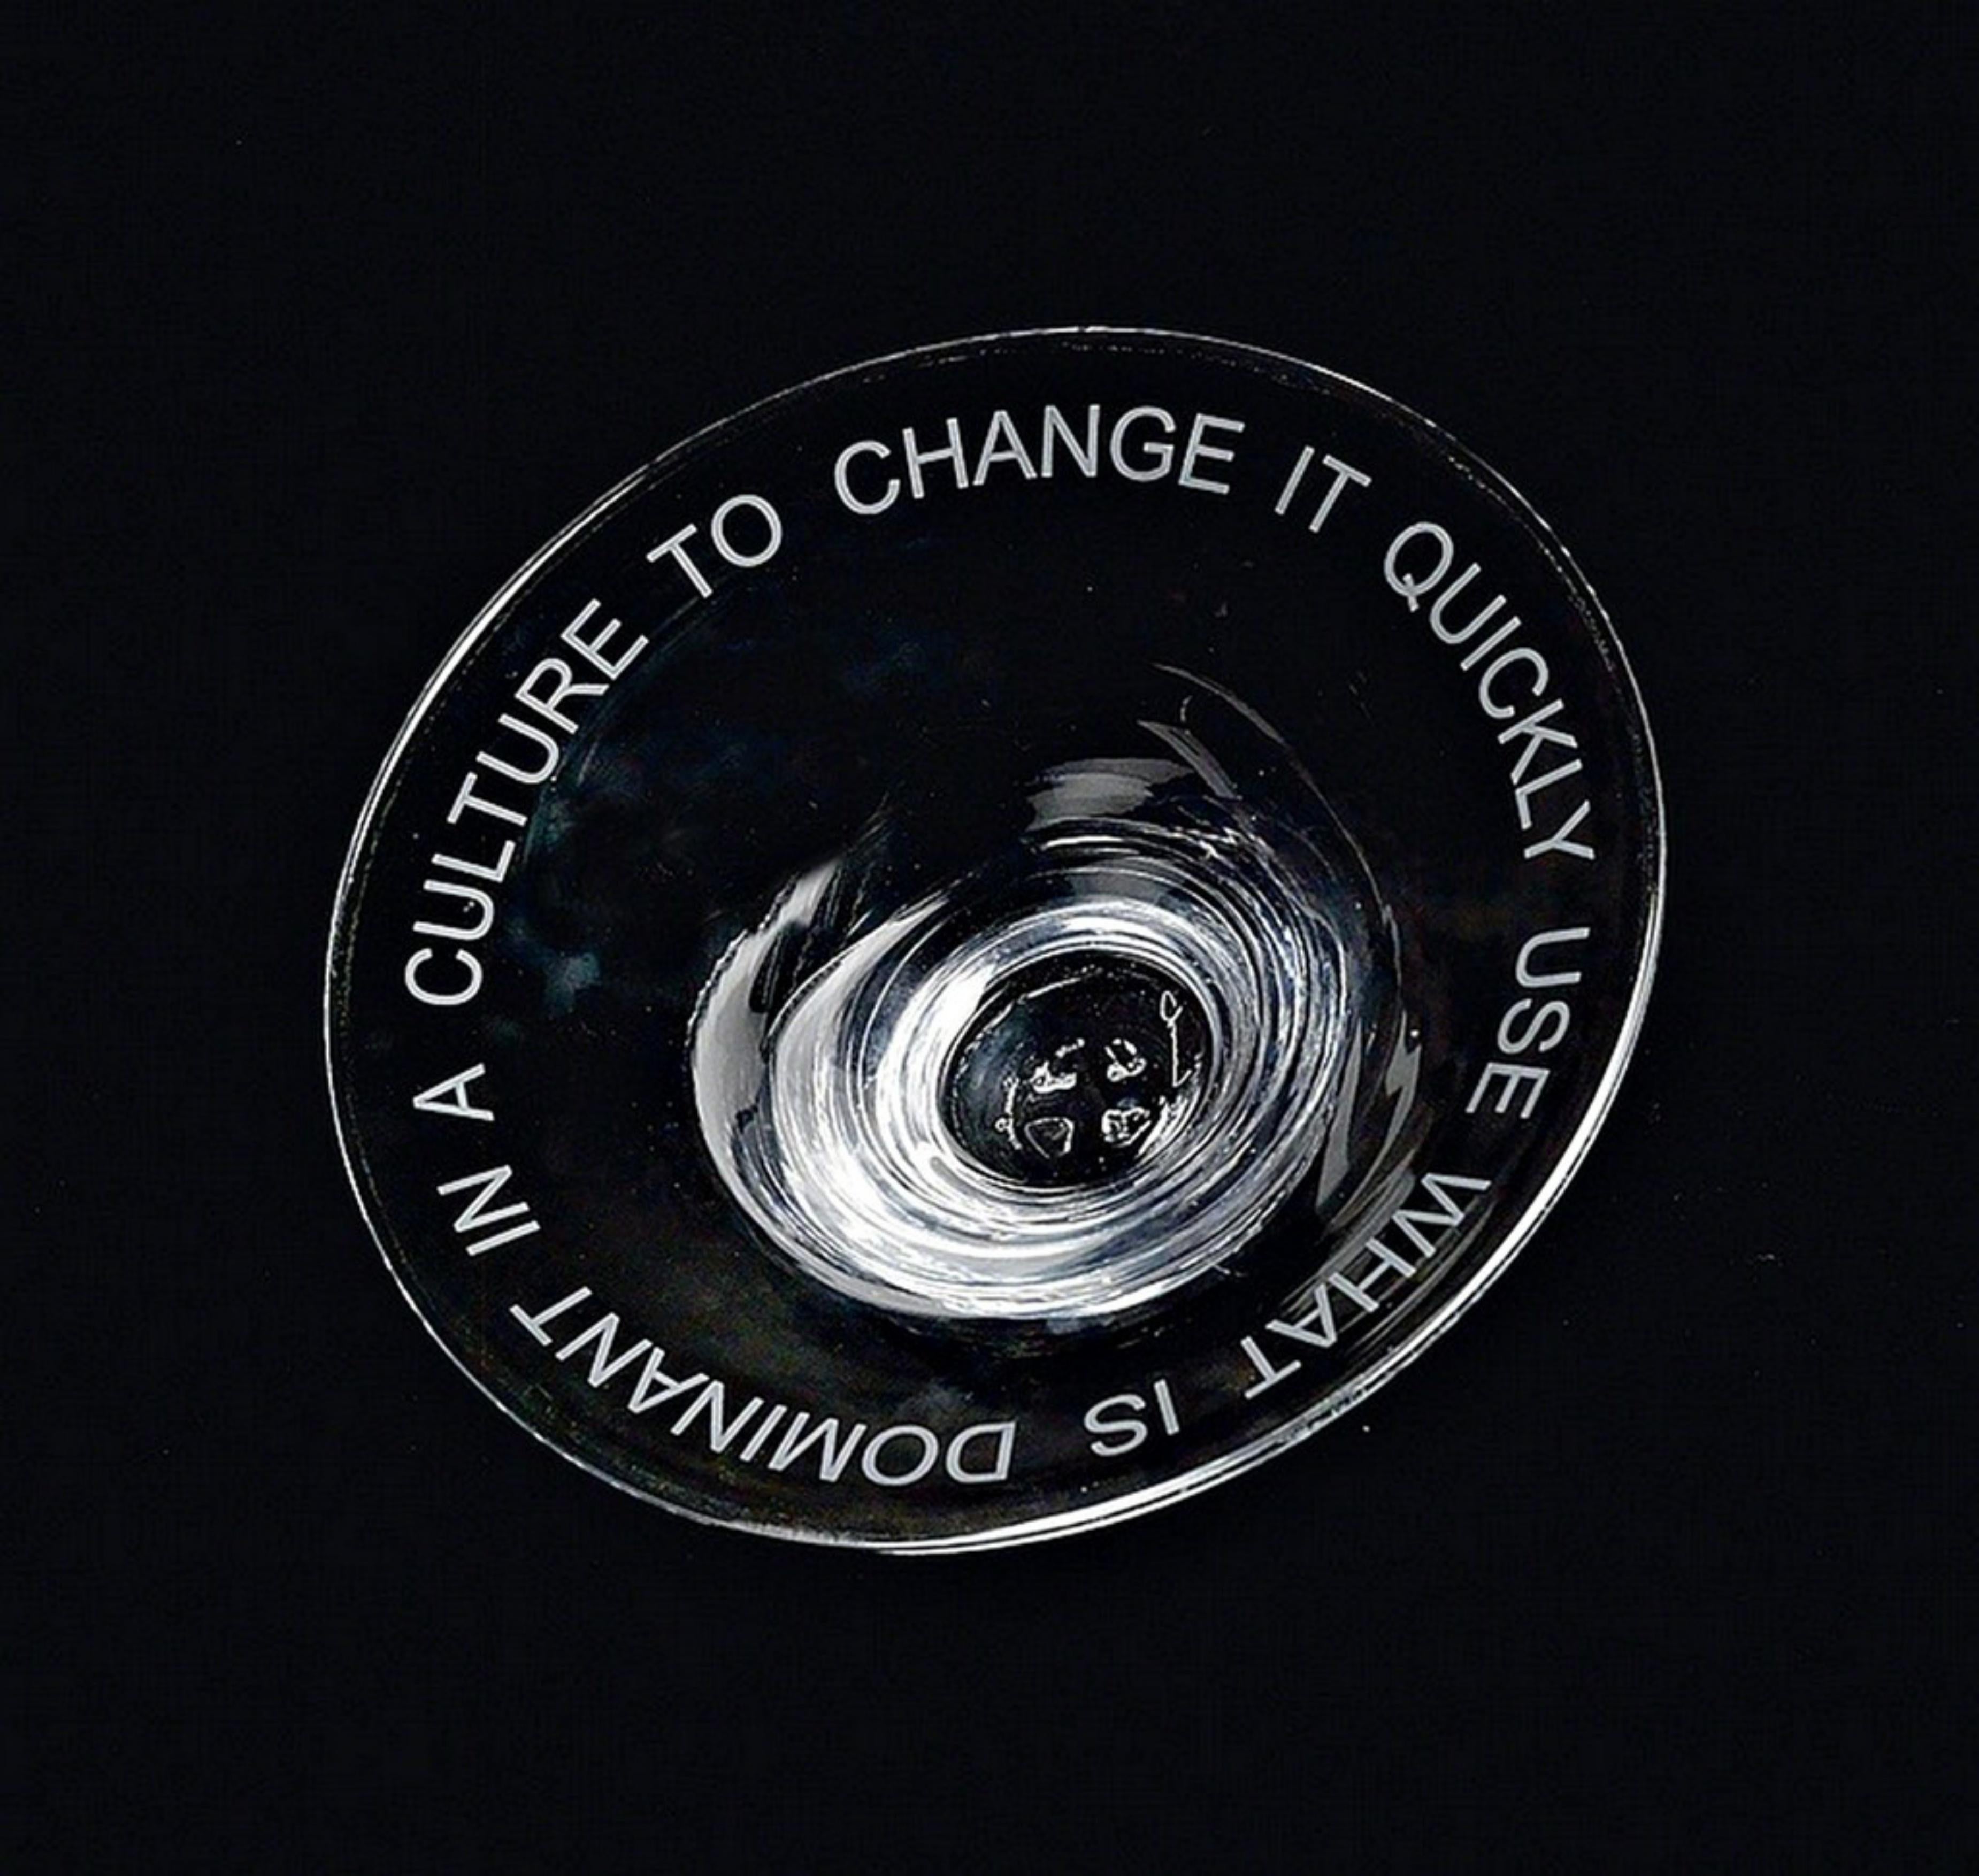 USE WHAT IS DOMINANT IN A CULTURE TO CHANGE IT: Signierte Glasschale, Whitney Museum (Zeitgenössisch), Sculpture, von Jenny Holzer